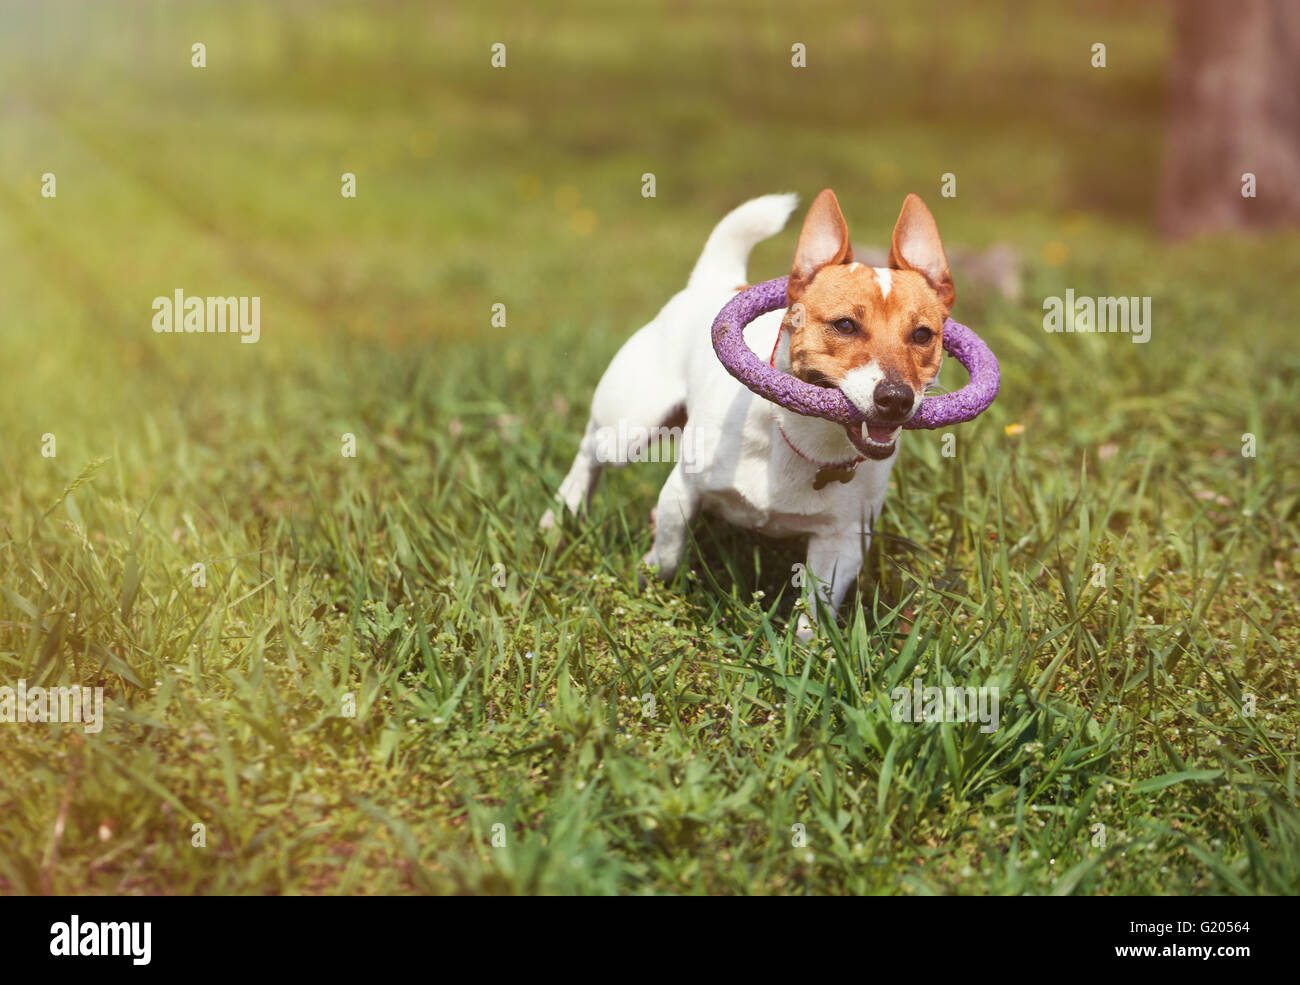 Jack Russell Welpen mit Puller Spielzeug in den Zähnen im grünen Park laufen. Niedliche kleine Haushund, guter Freund für eine Familie und Kinder. Freundlich und verspielt Hunde Rasse Stockfoto